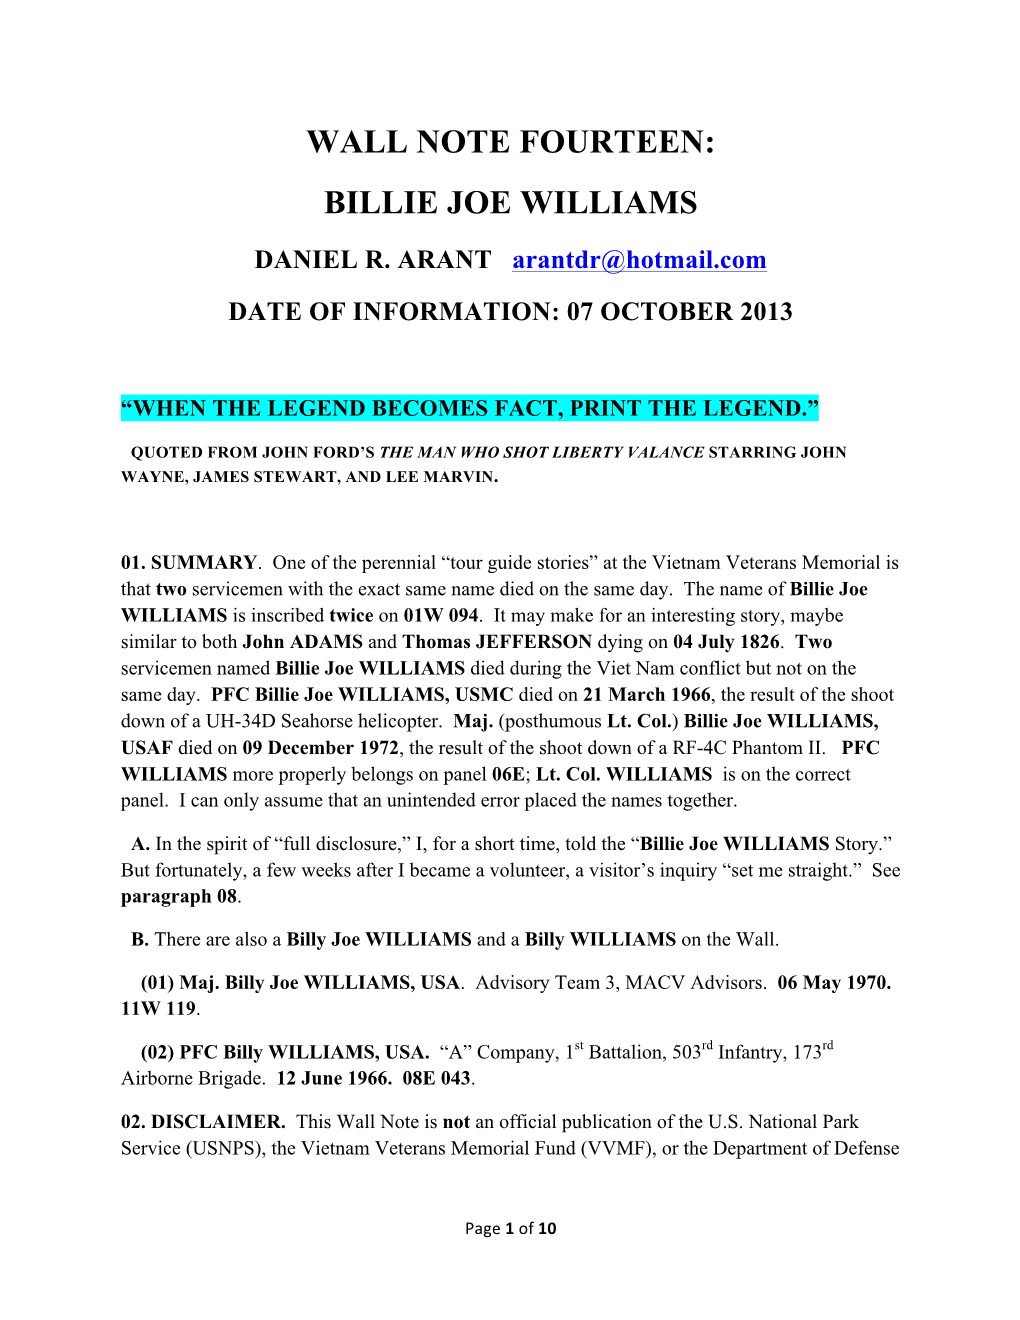 Billie Joe Williams